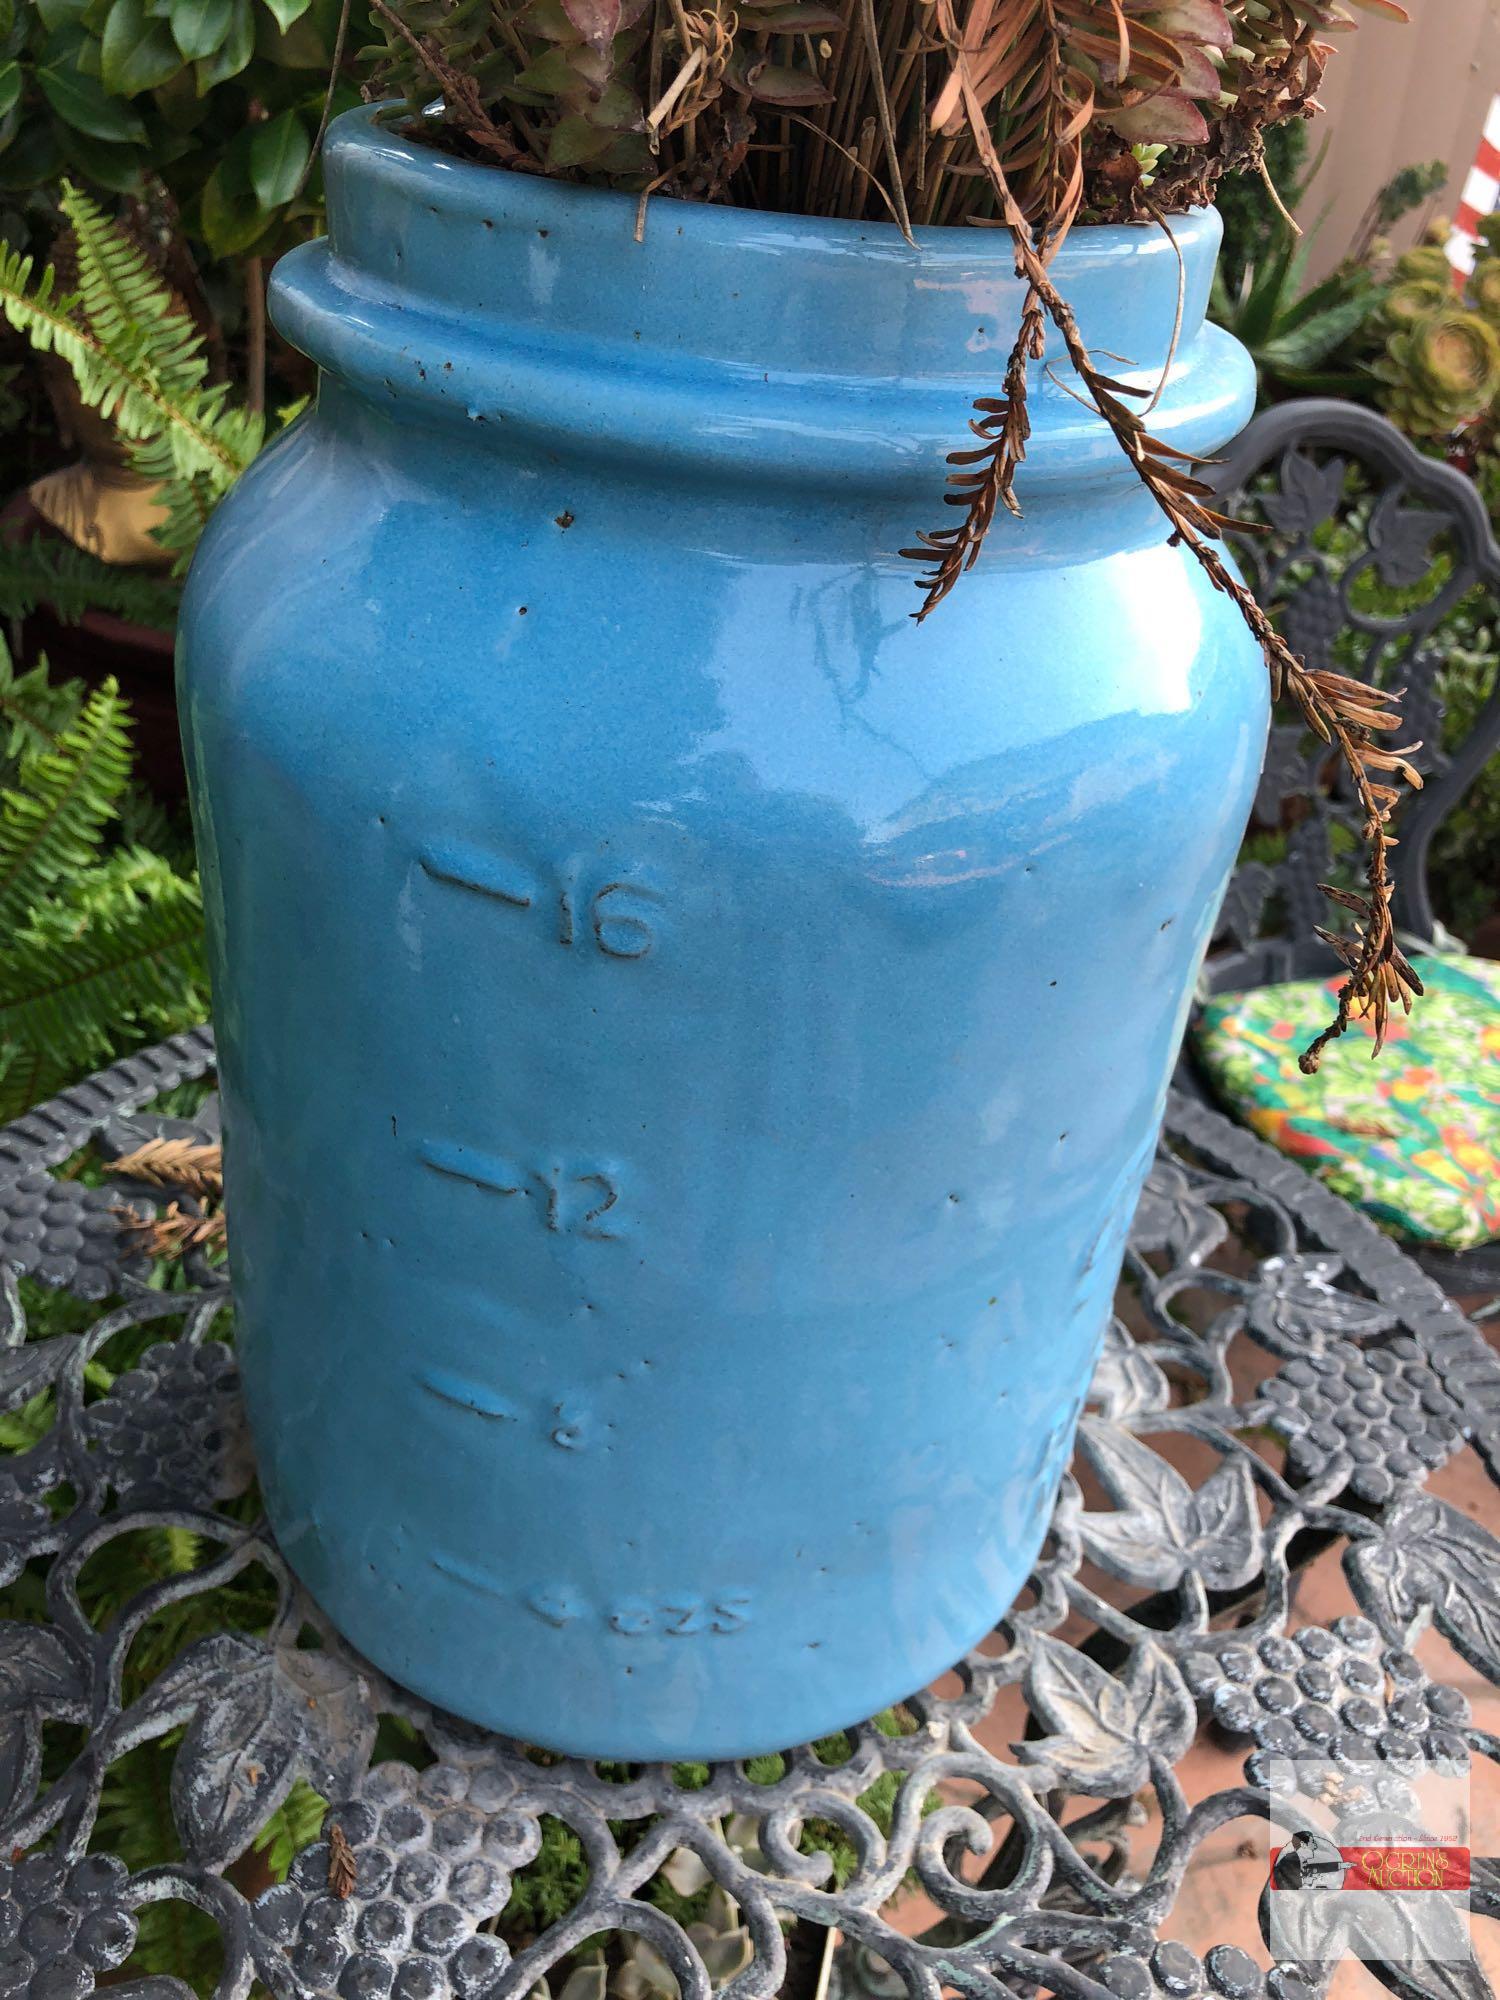 Yard & Garden - Lg. blue Perfect Mason pottery crock, potted wheat grass, 16.5"hx11"w (43"h)